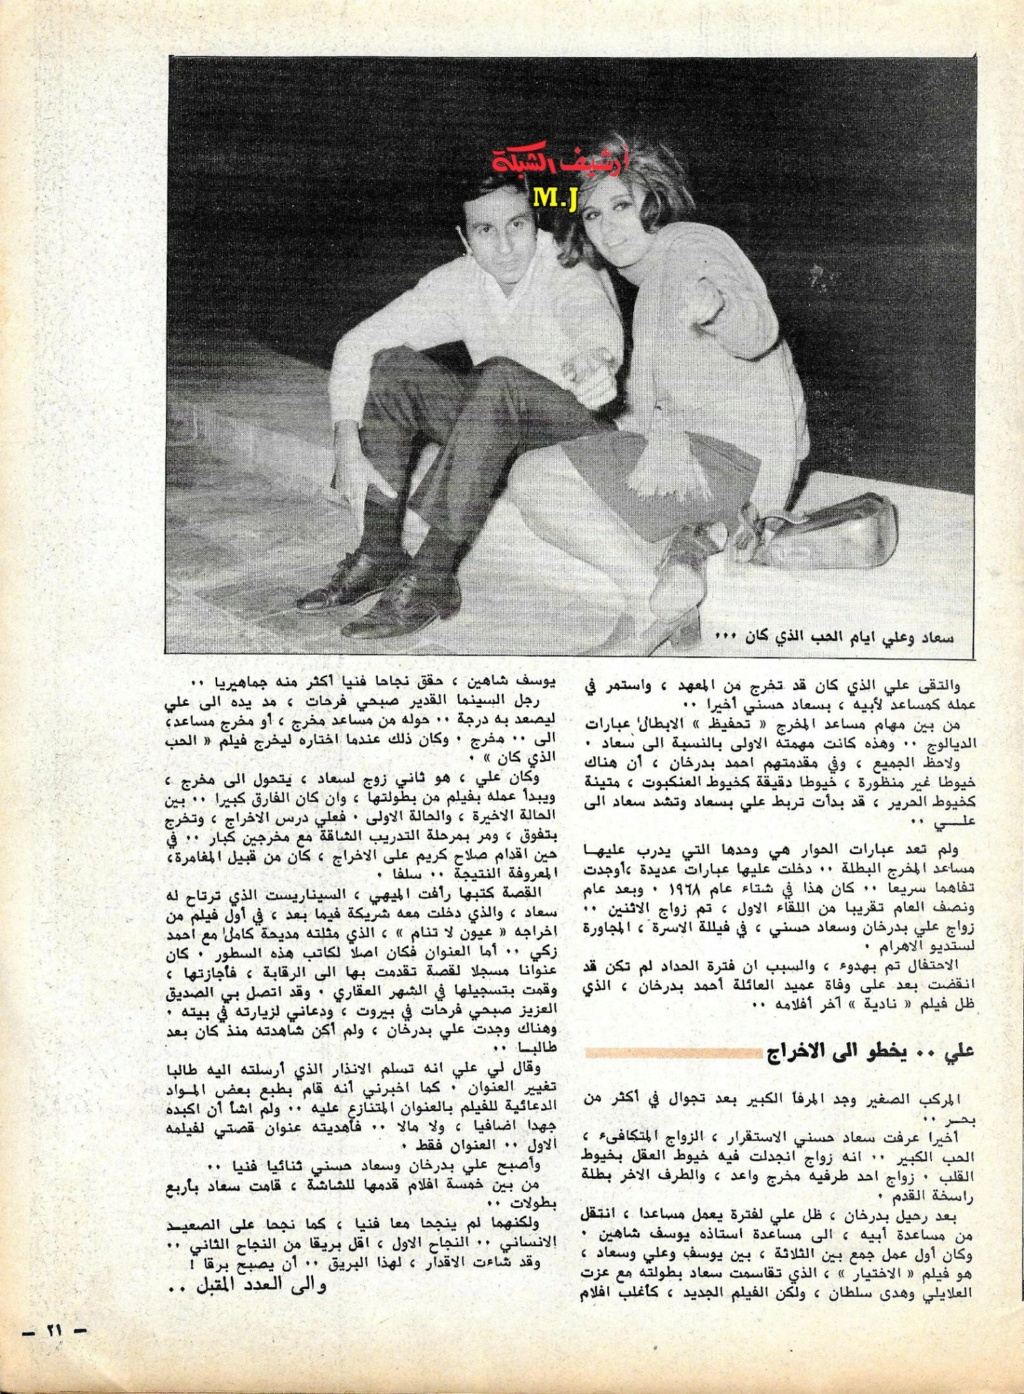 الحب - مقال صحفي : سعاد حسني وعلي بدرخان وقصة الحب الذي كان 1981 م 810